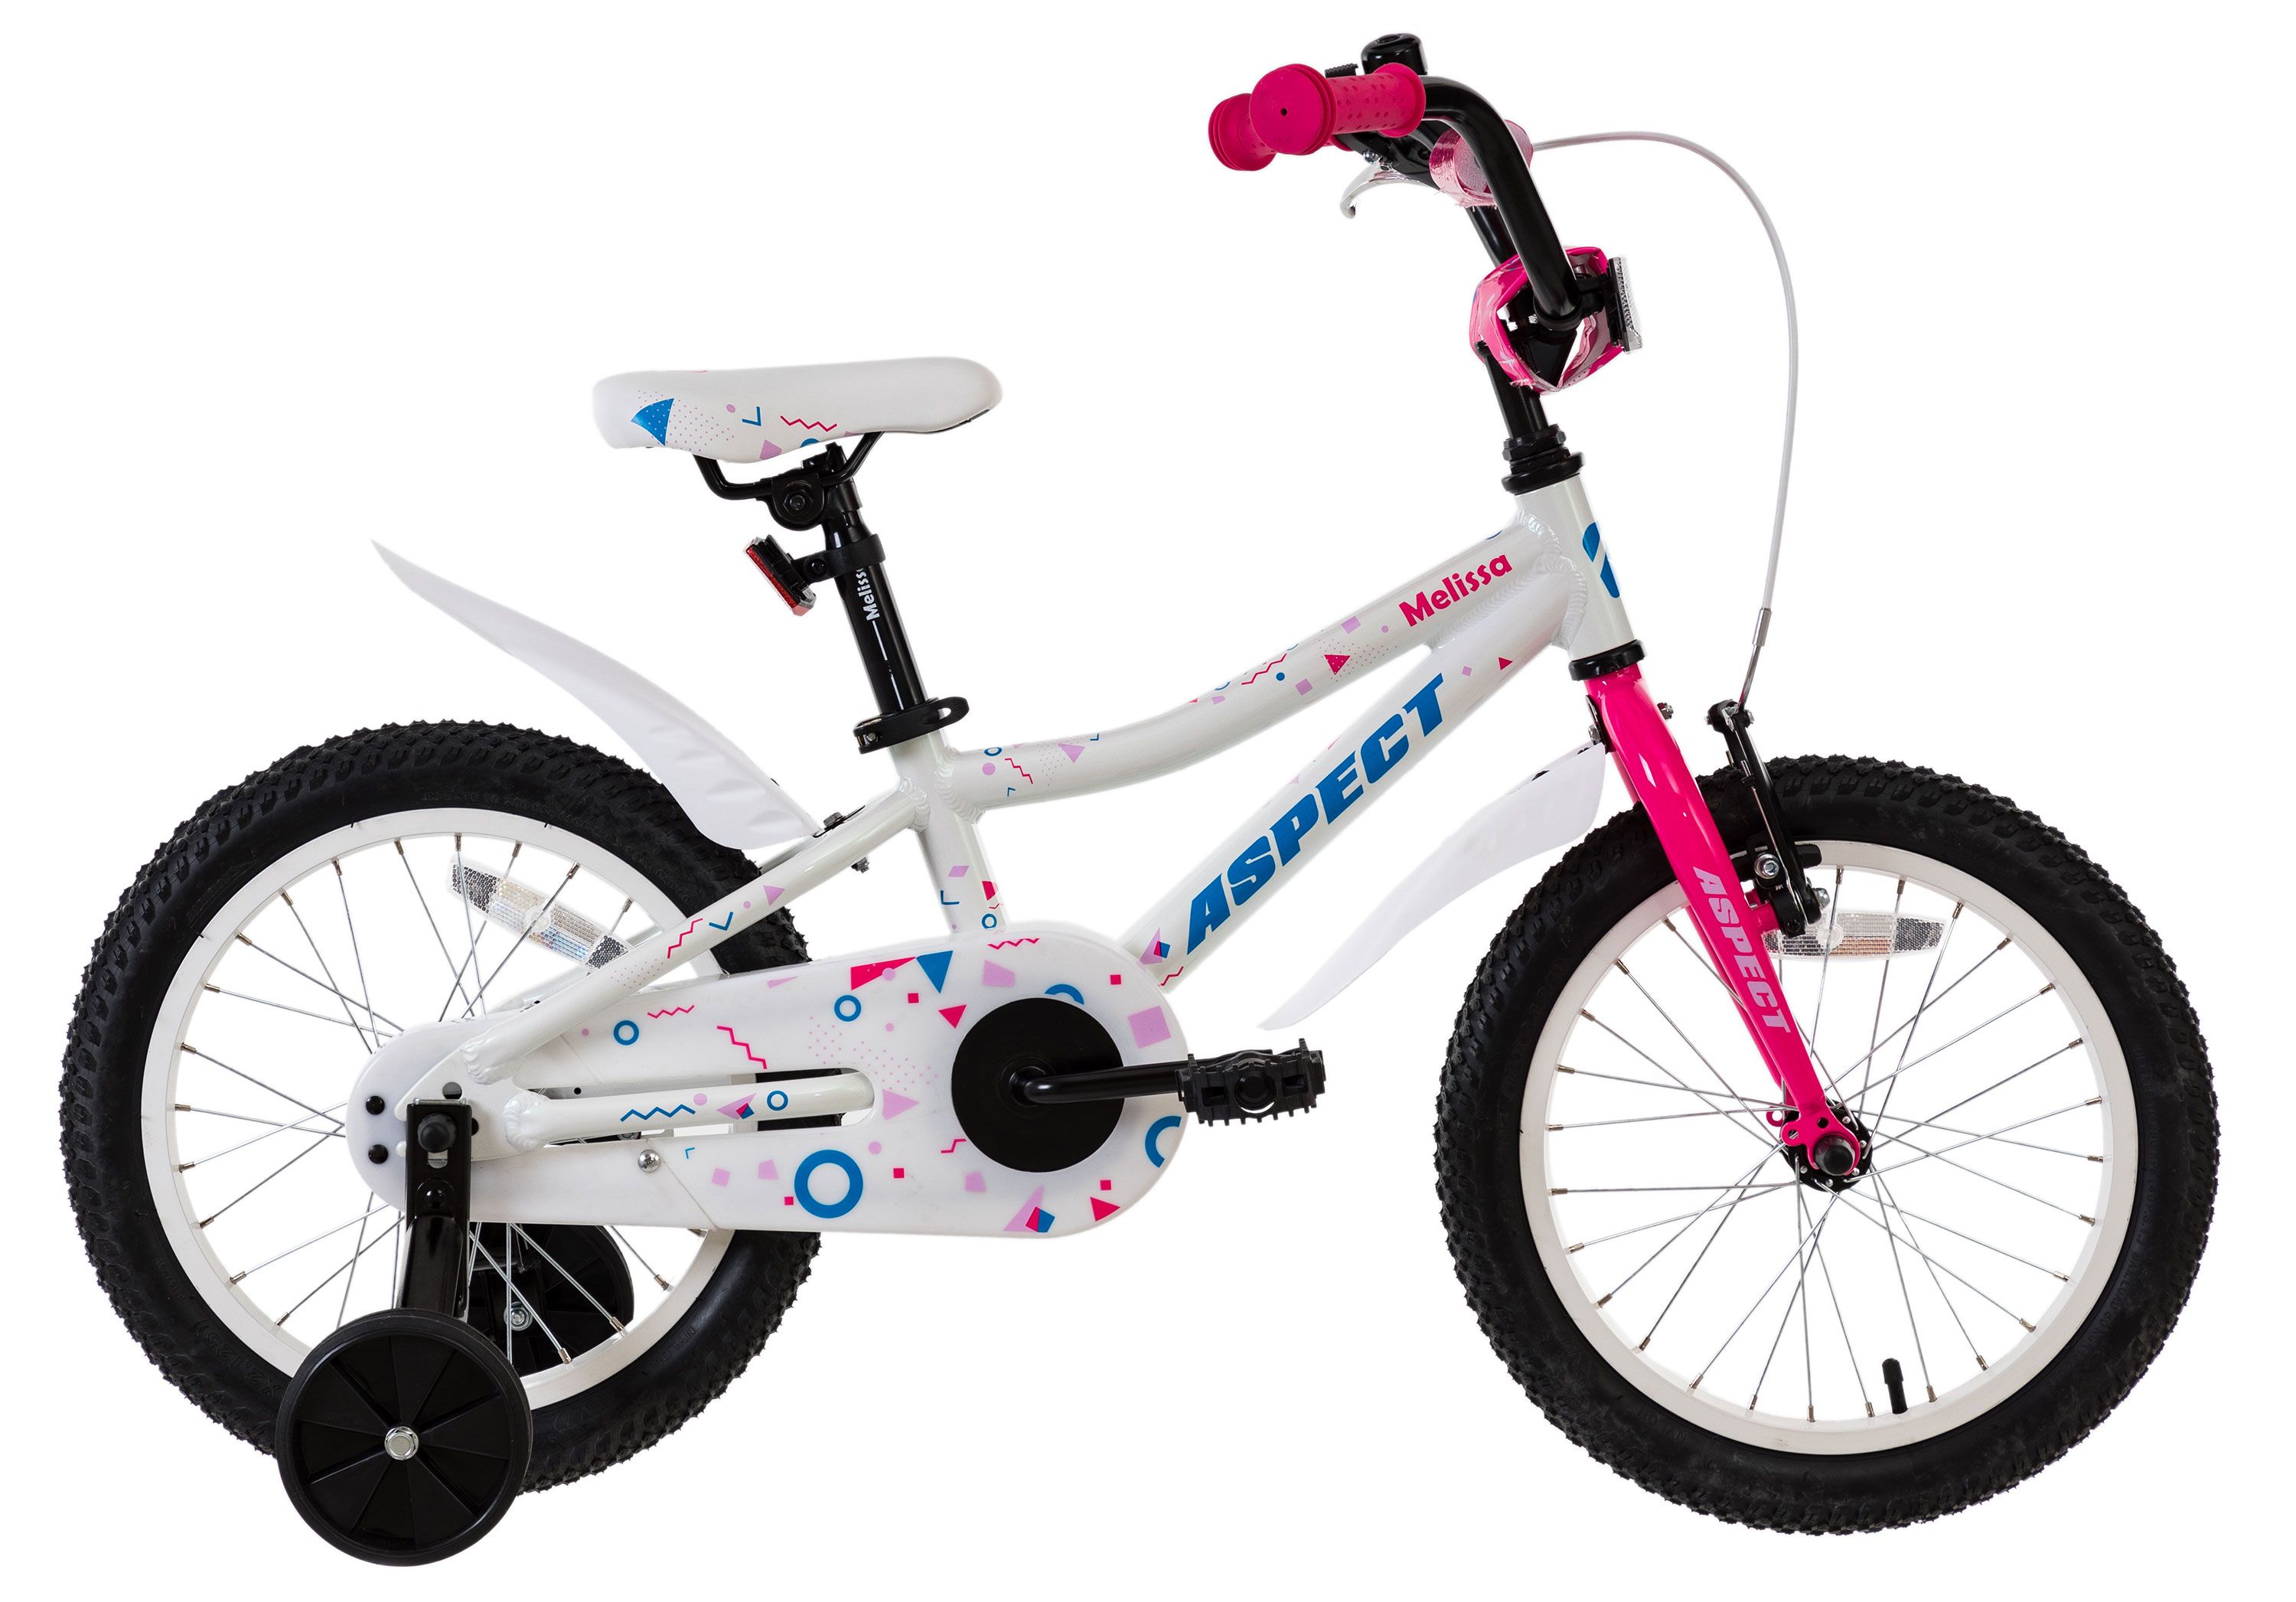  Отзывы о Детском велосипеде Aspect MELISSA GIRL 16 2017